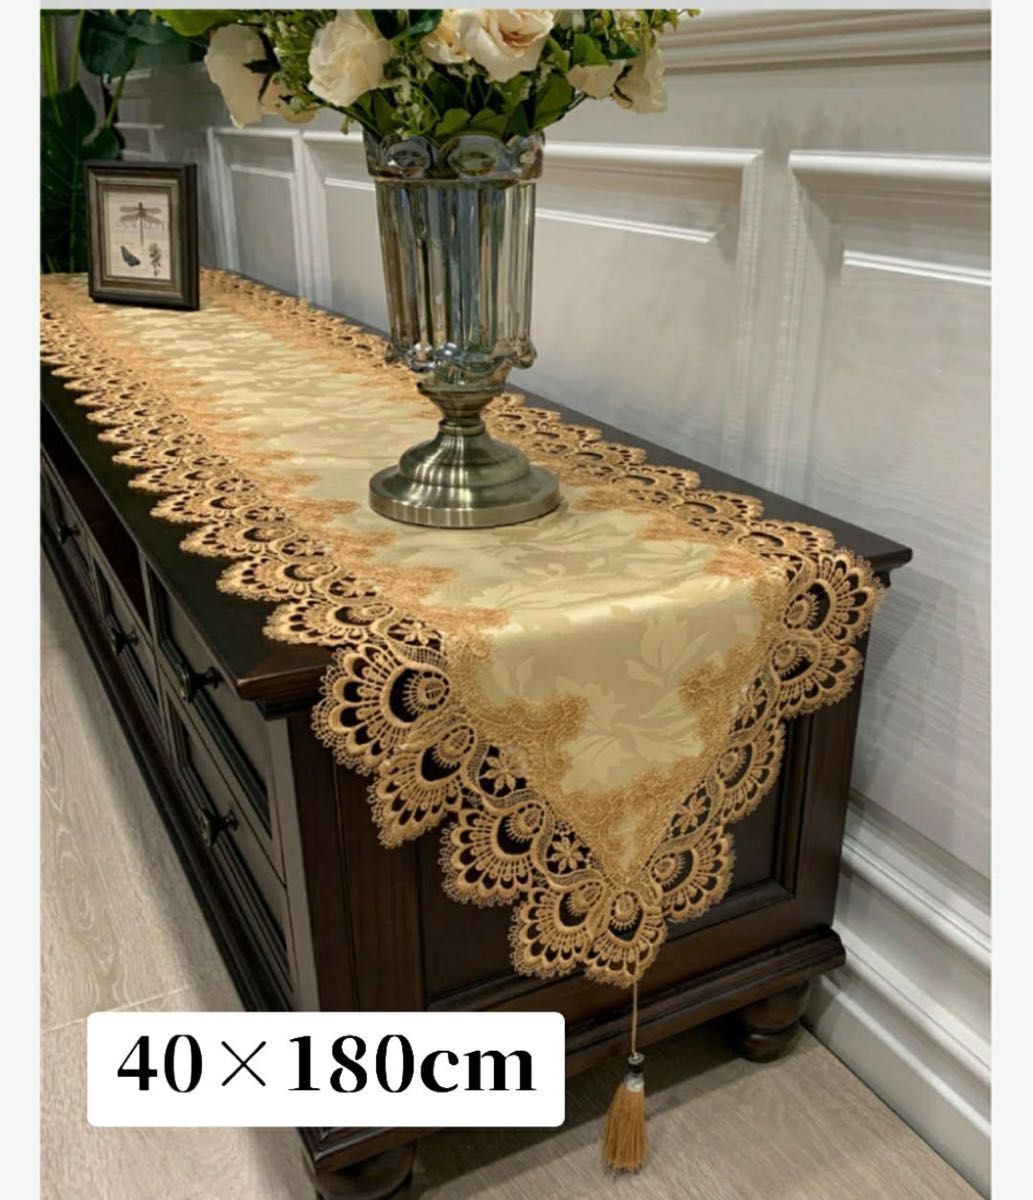 テーブルランナー テーブルクロス レース 刺繍 北欧 40×180cm エレガント アンティーク 花柄